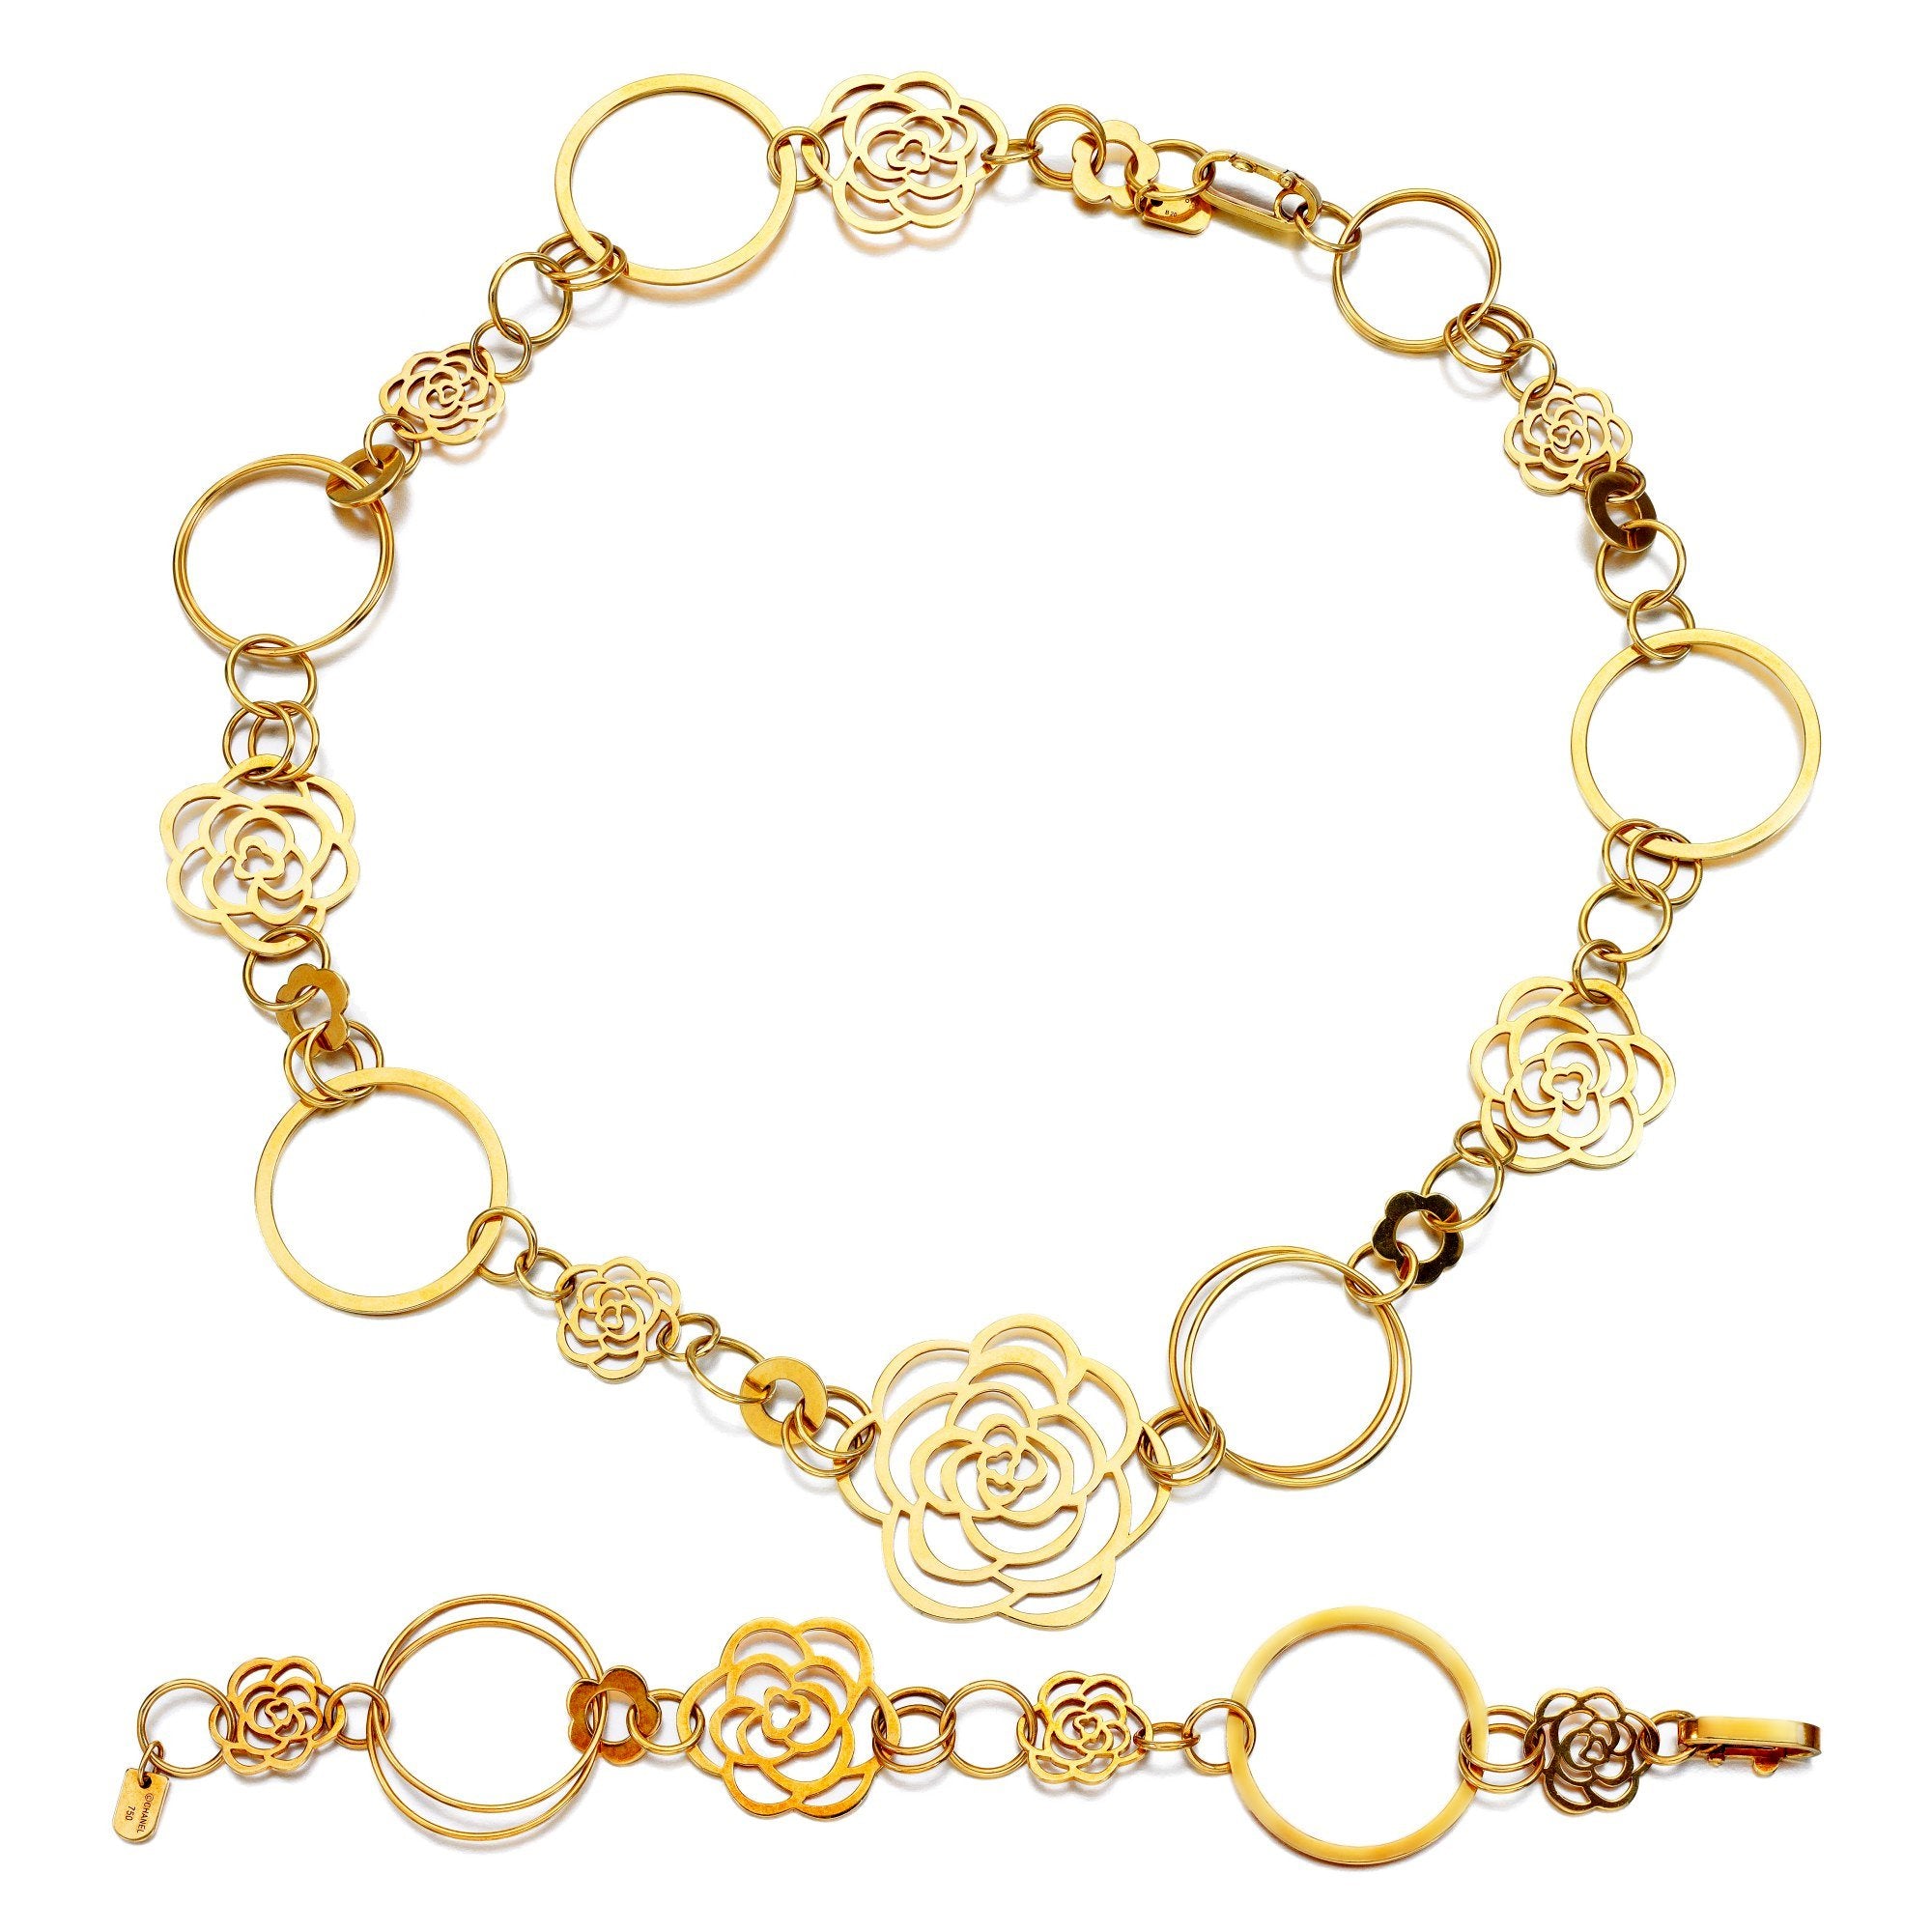 Chanel Bracelet Charm - 102 For Sale on 1stDibs